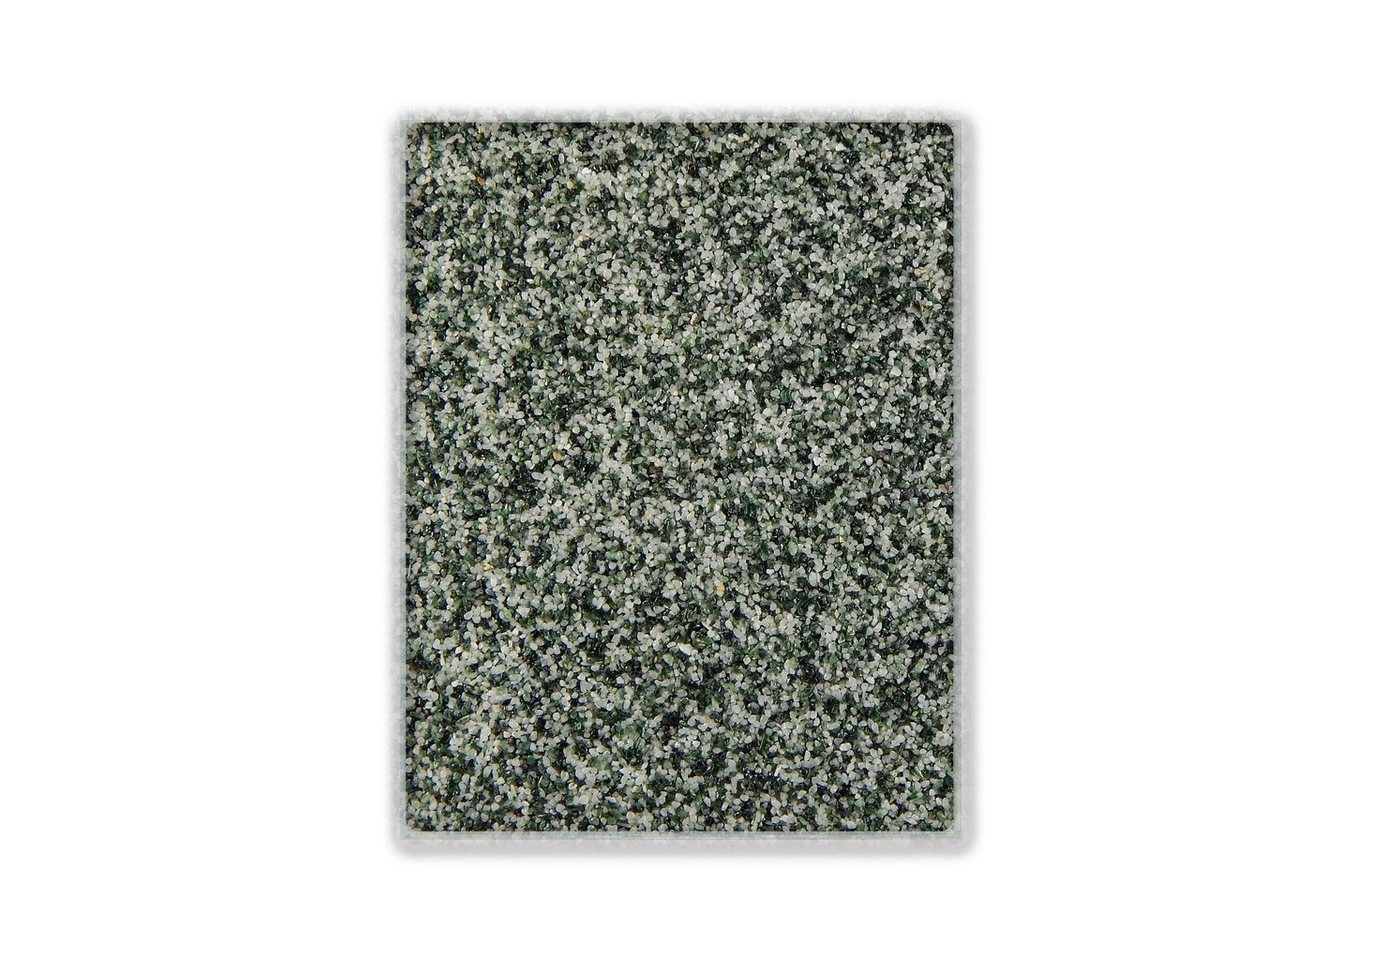 Terralith® Designboden Farbmuster Kompaktboden -verde chiaro-, Originalware aus der Charge, die wir in diesem Moment im Abverkauf haben. von Terralith®